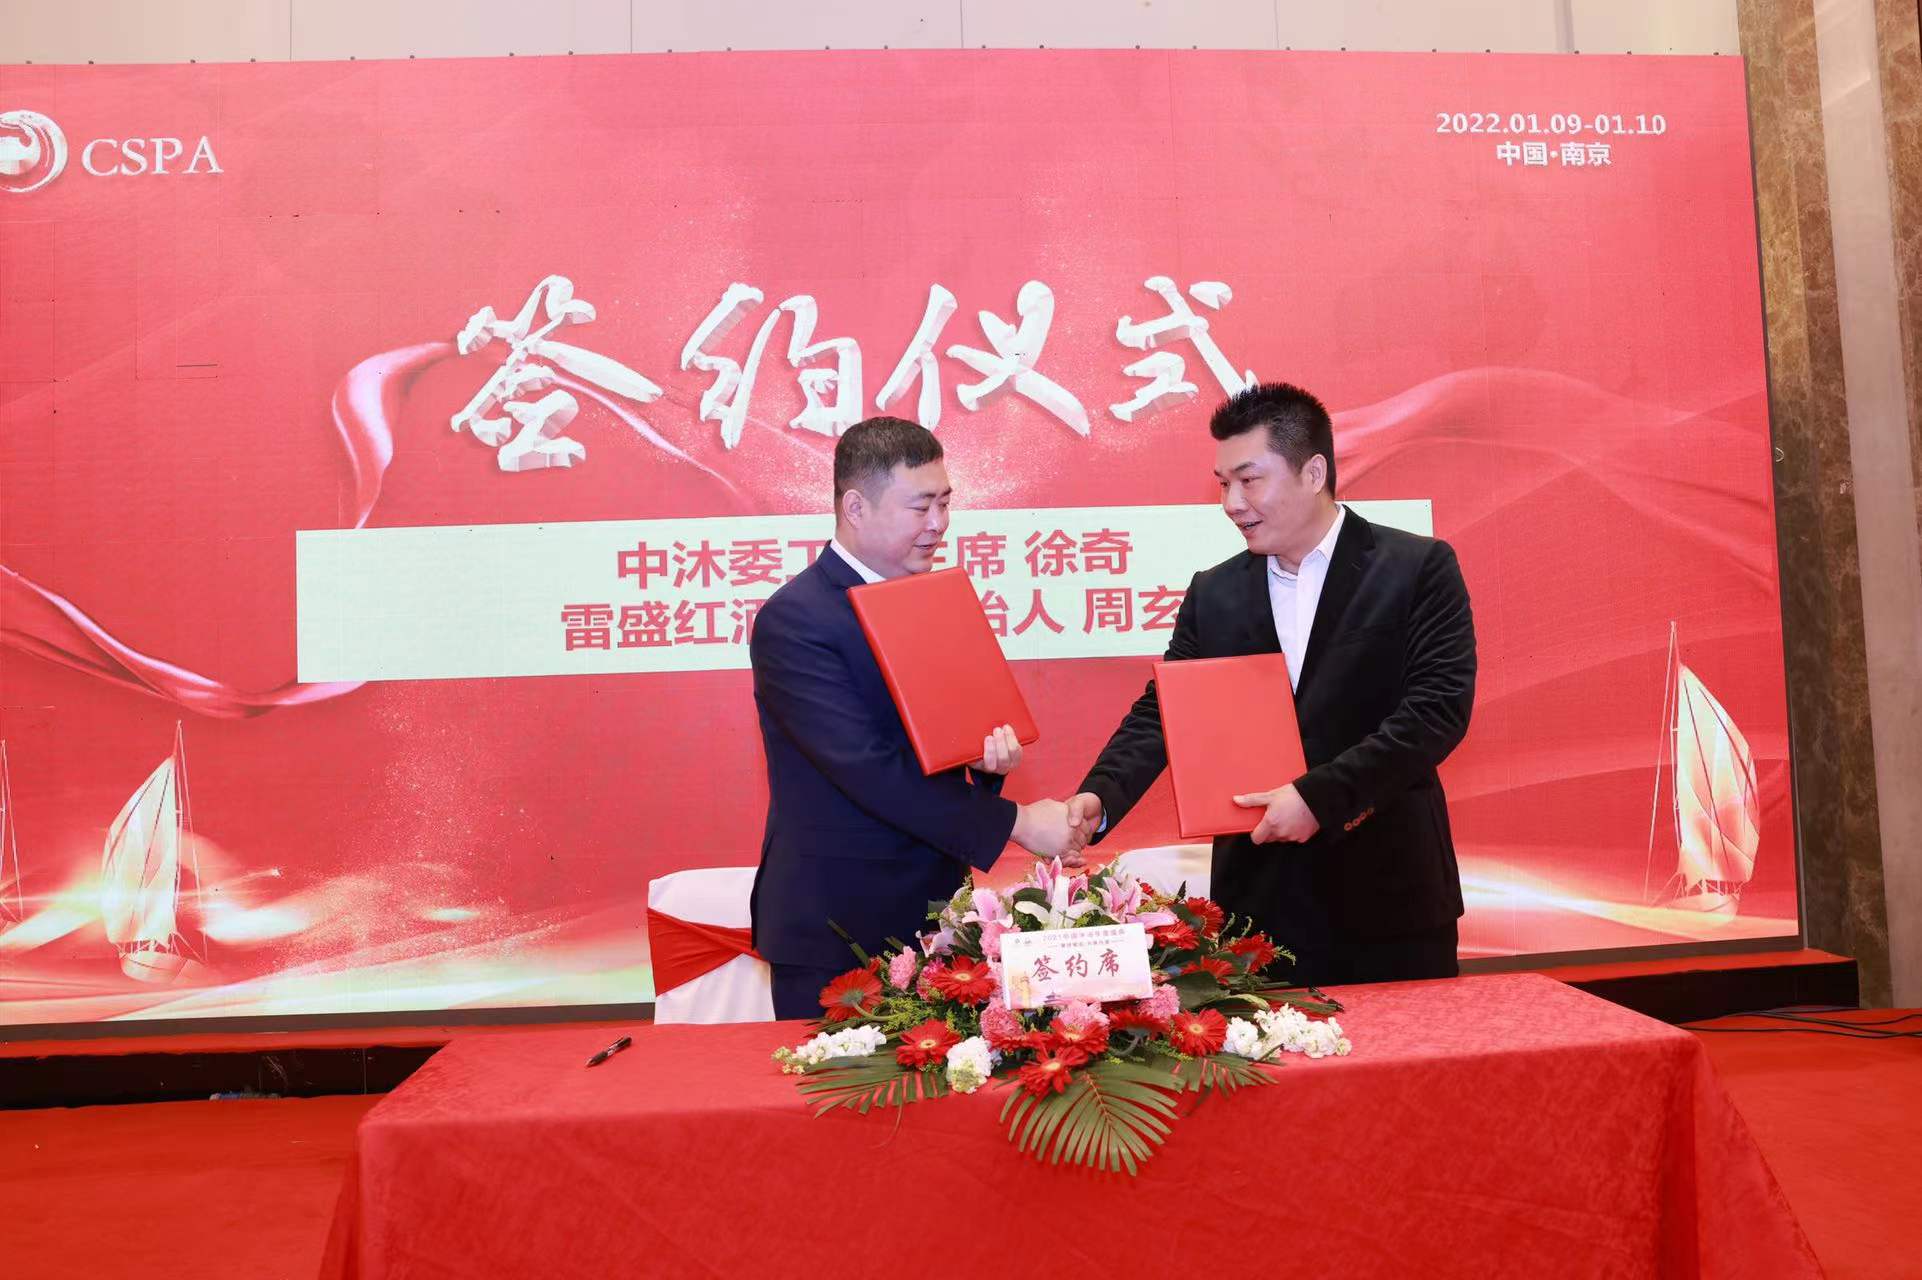 中国商业联合会沐浴专业委员会和雷盛红酒签署战略合作协议